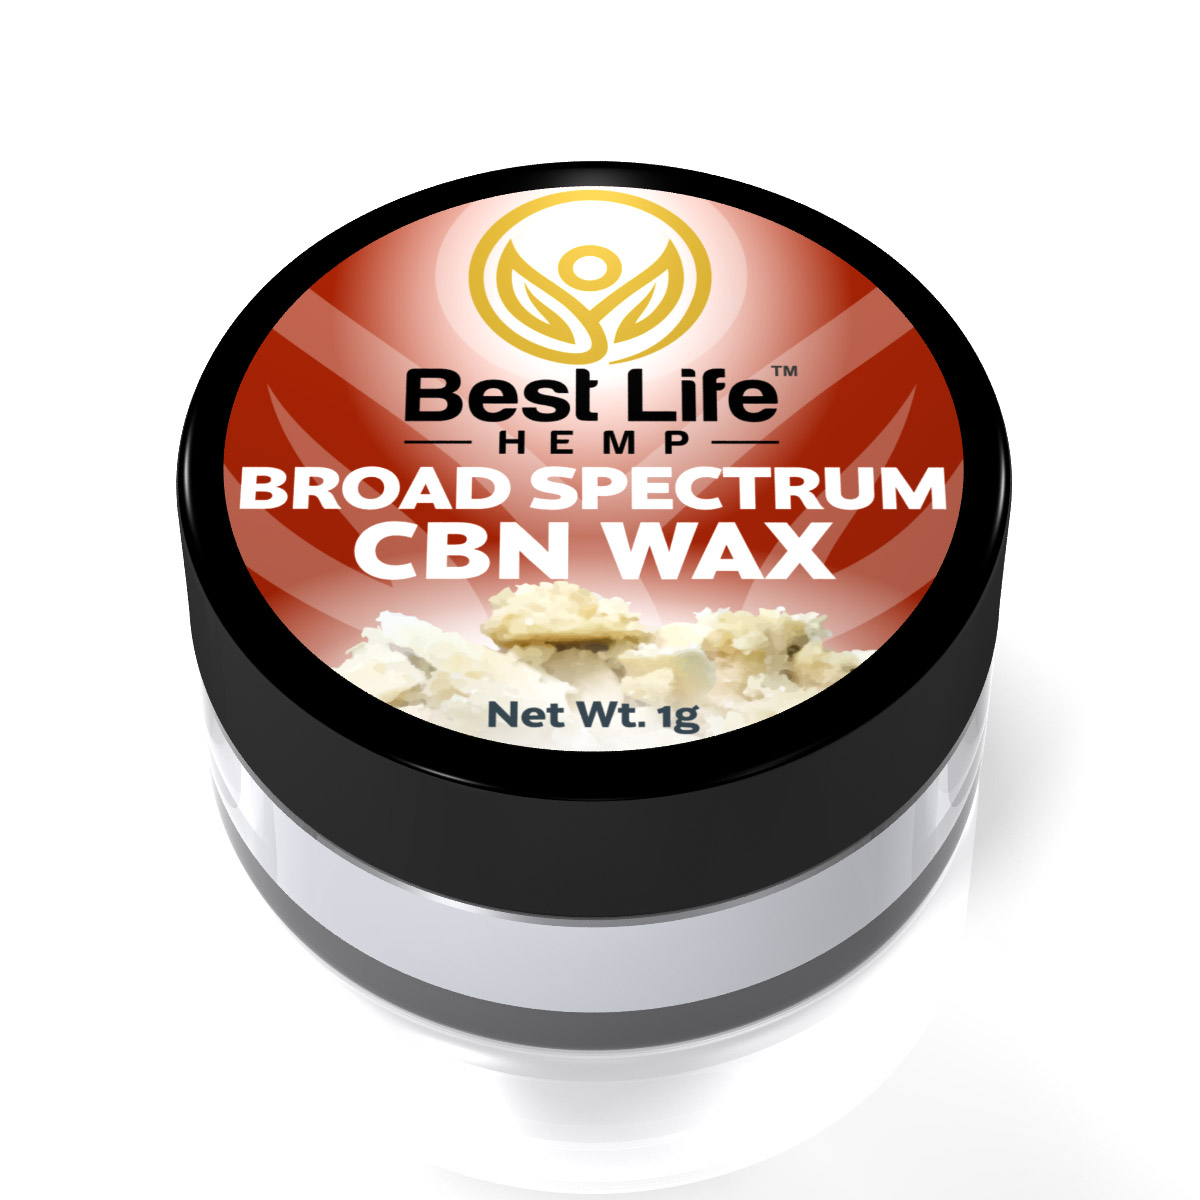 BROAD SPECTRUM CBN WAX - Buy CBD Oil Online